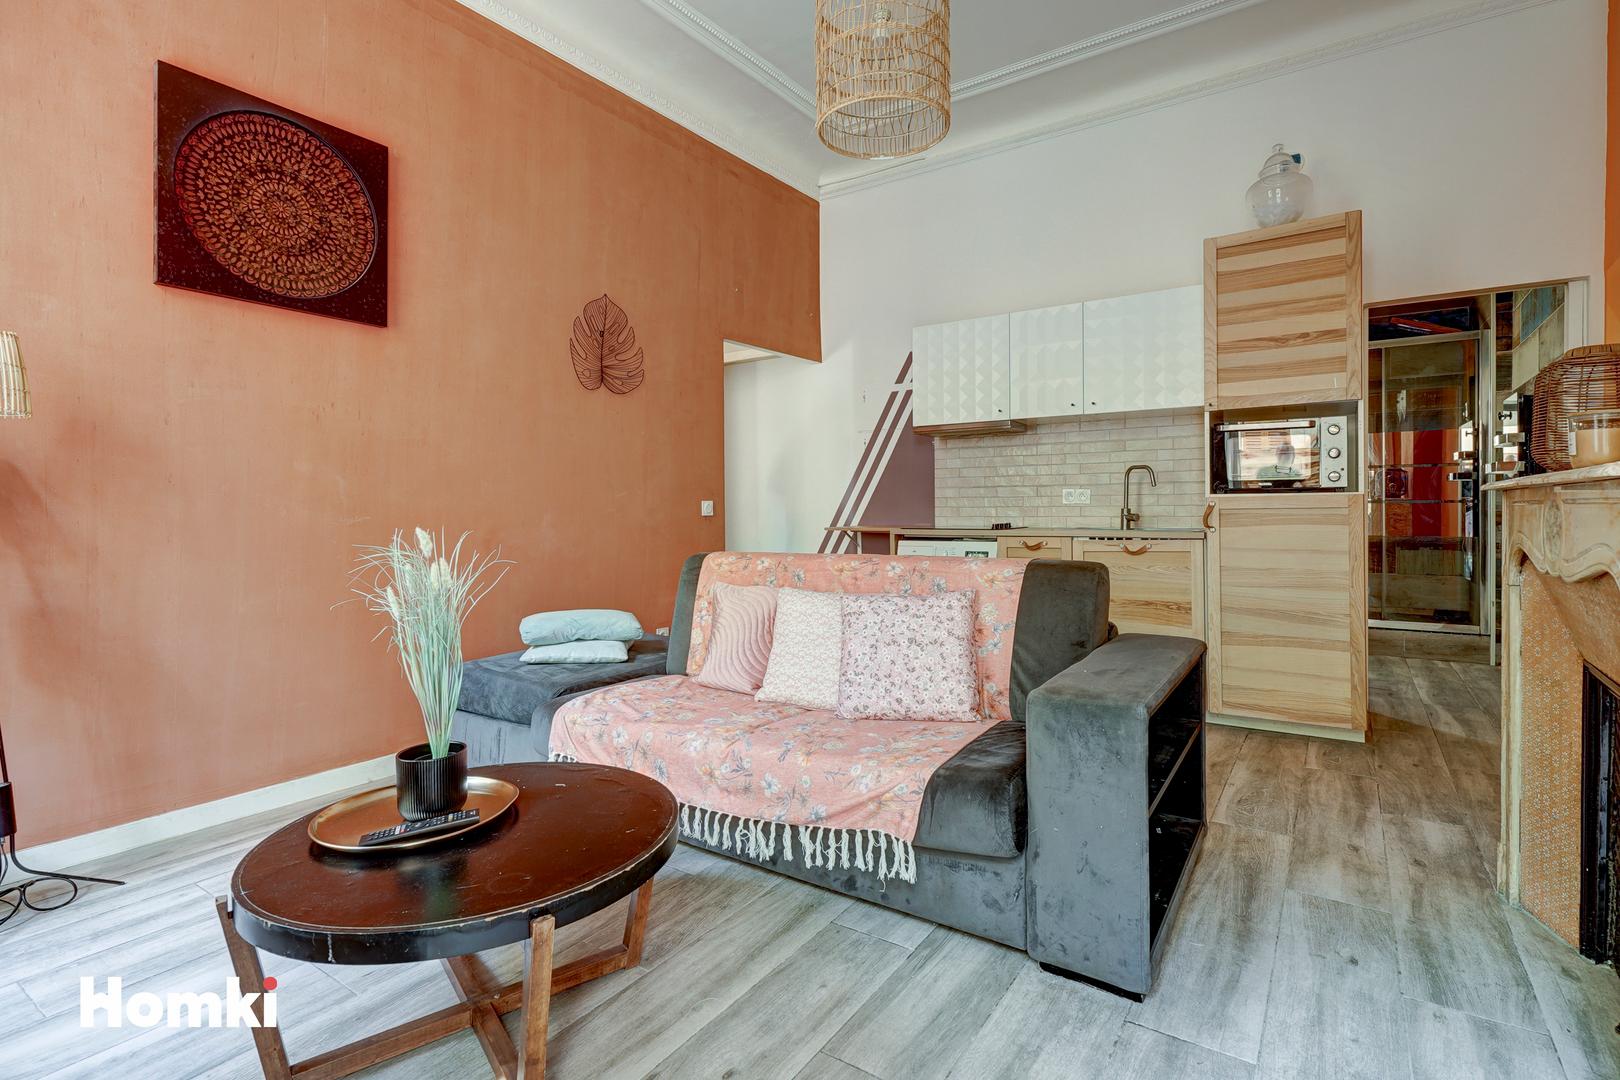 Homki - Vente Appartement  de 37.0 m² à Marseille 13004